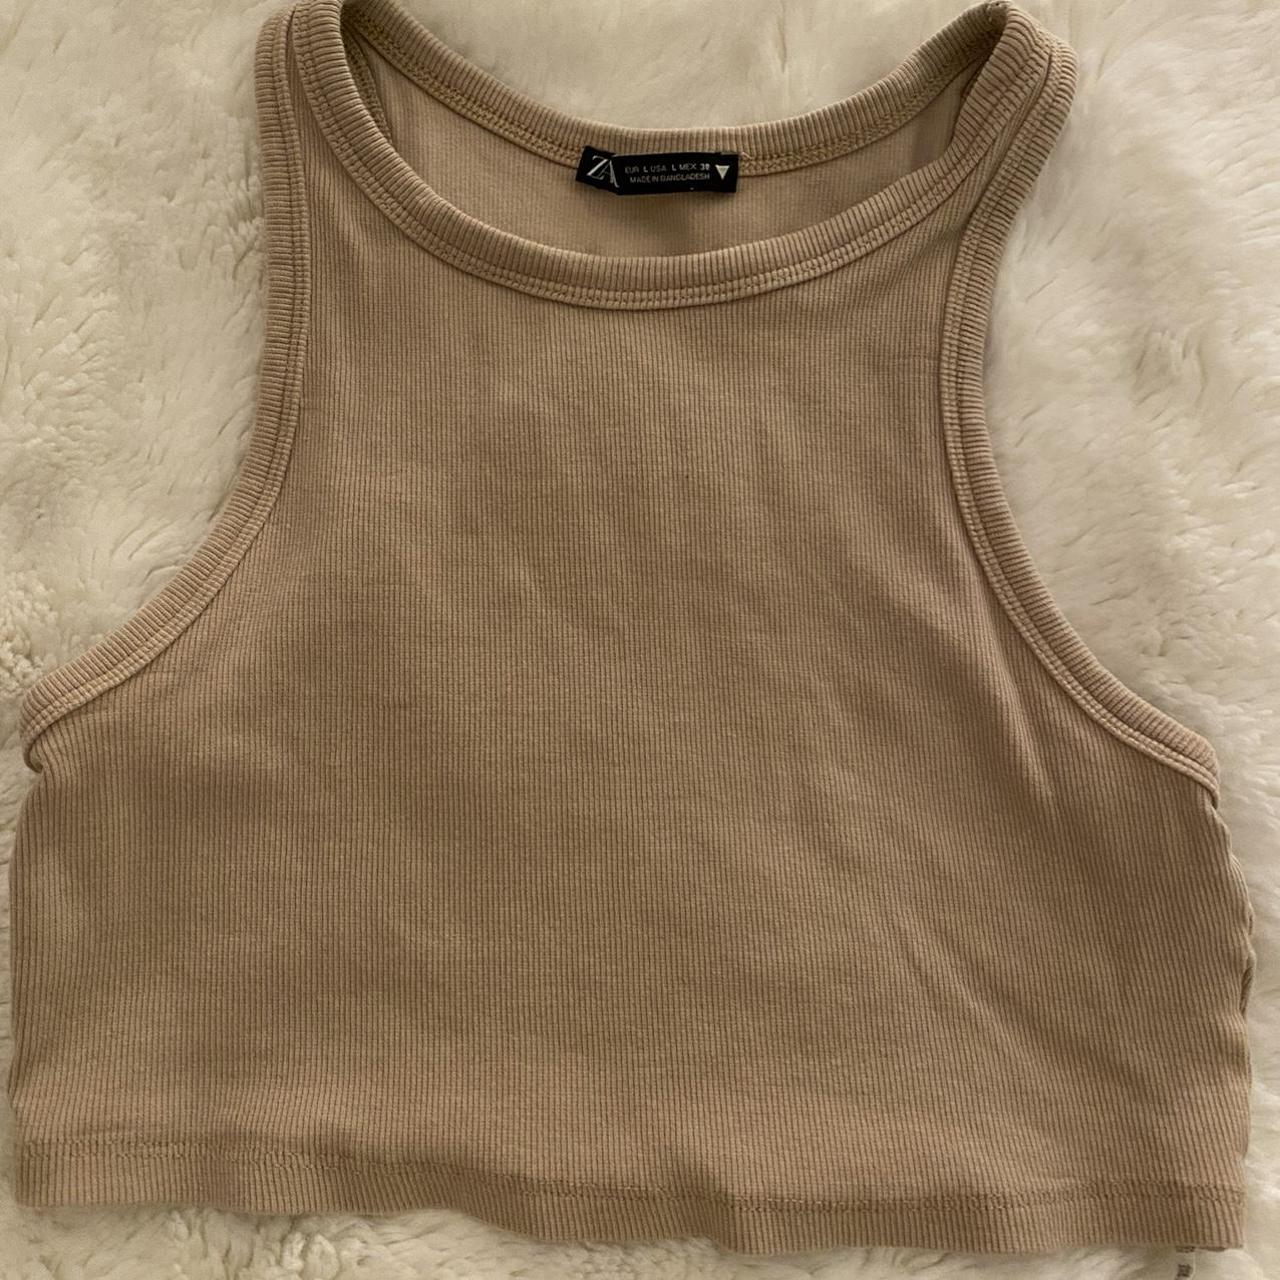 Zara limitless contour collection tan crop top. Size - Depop